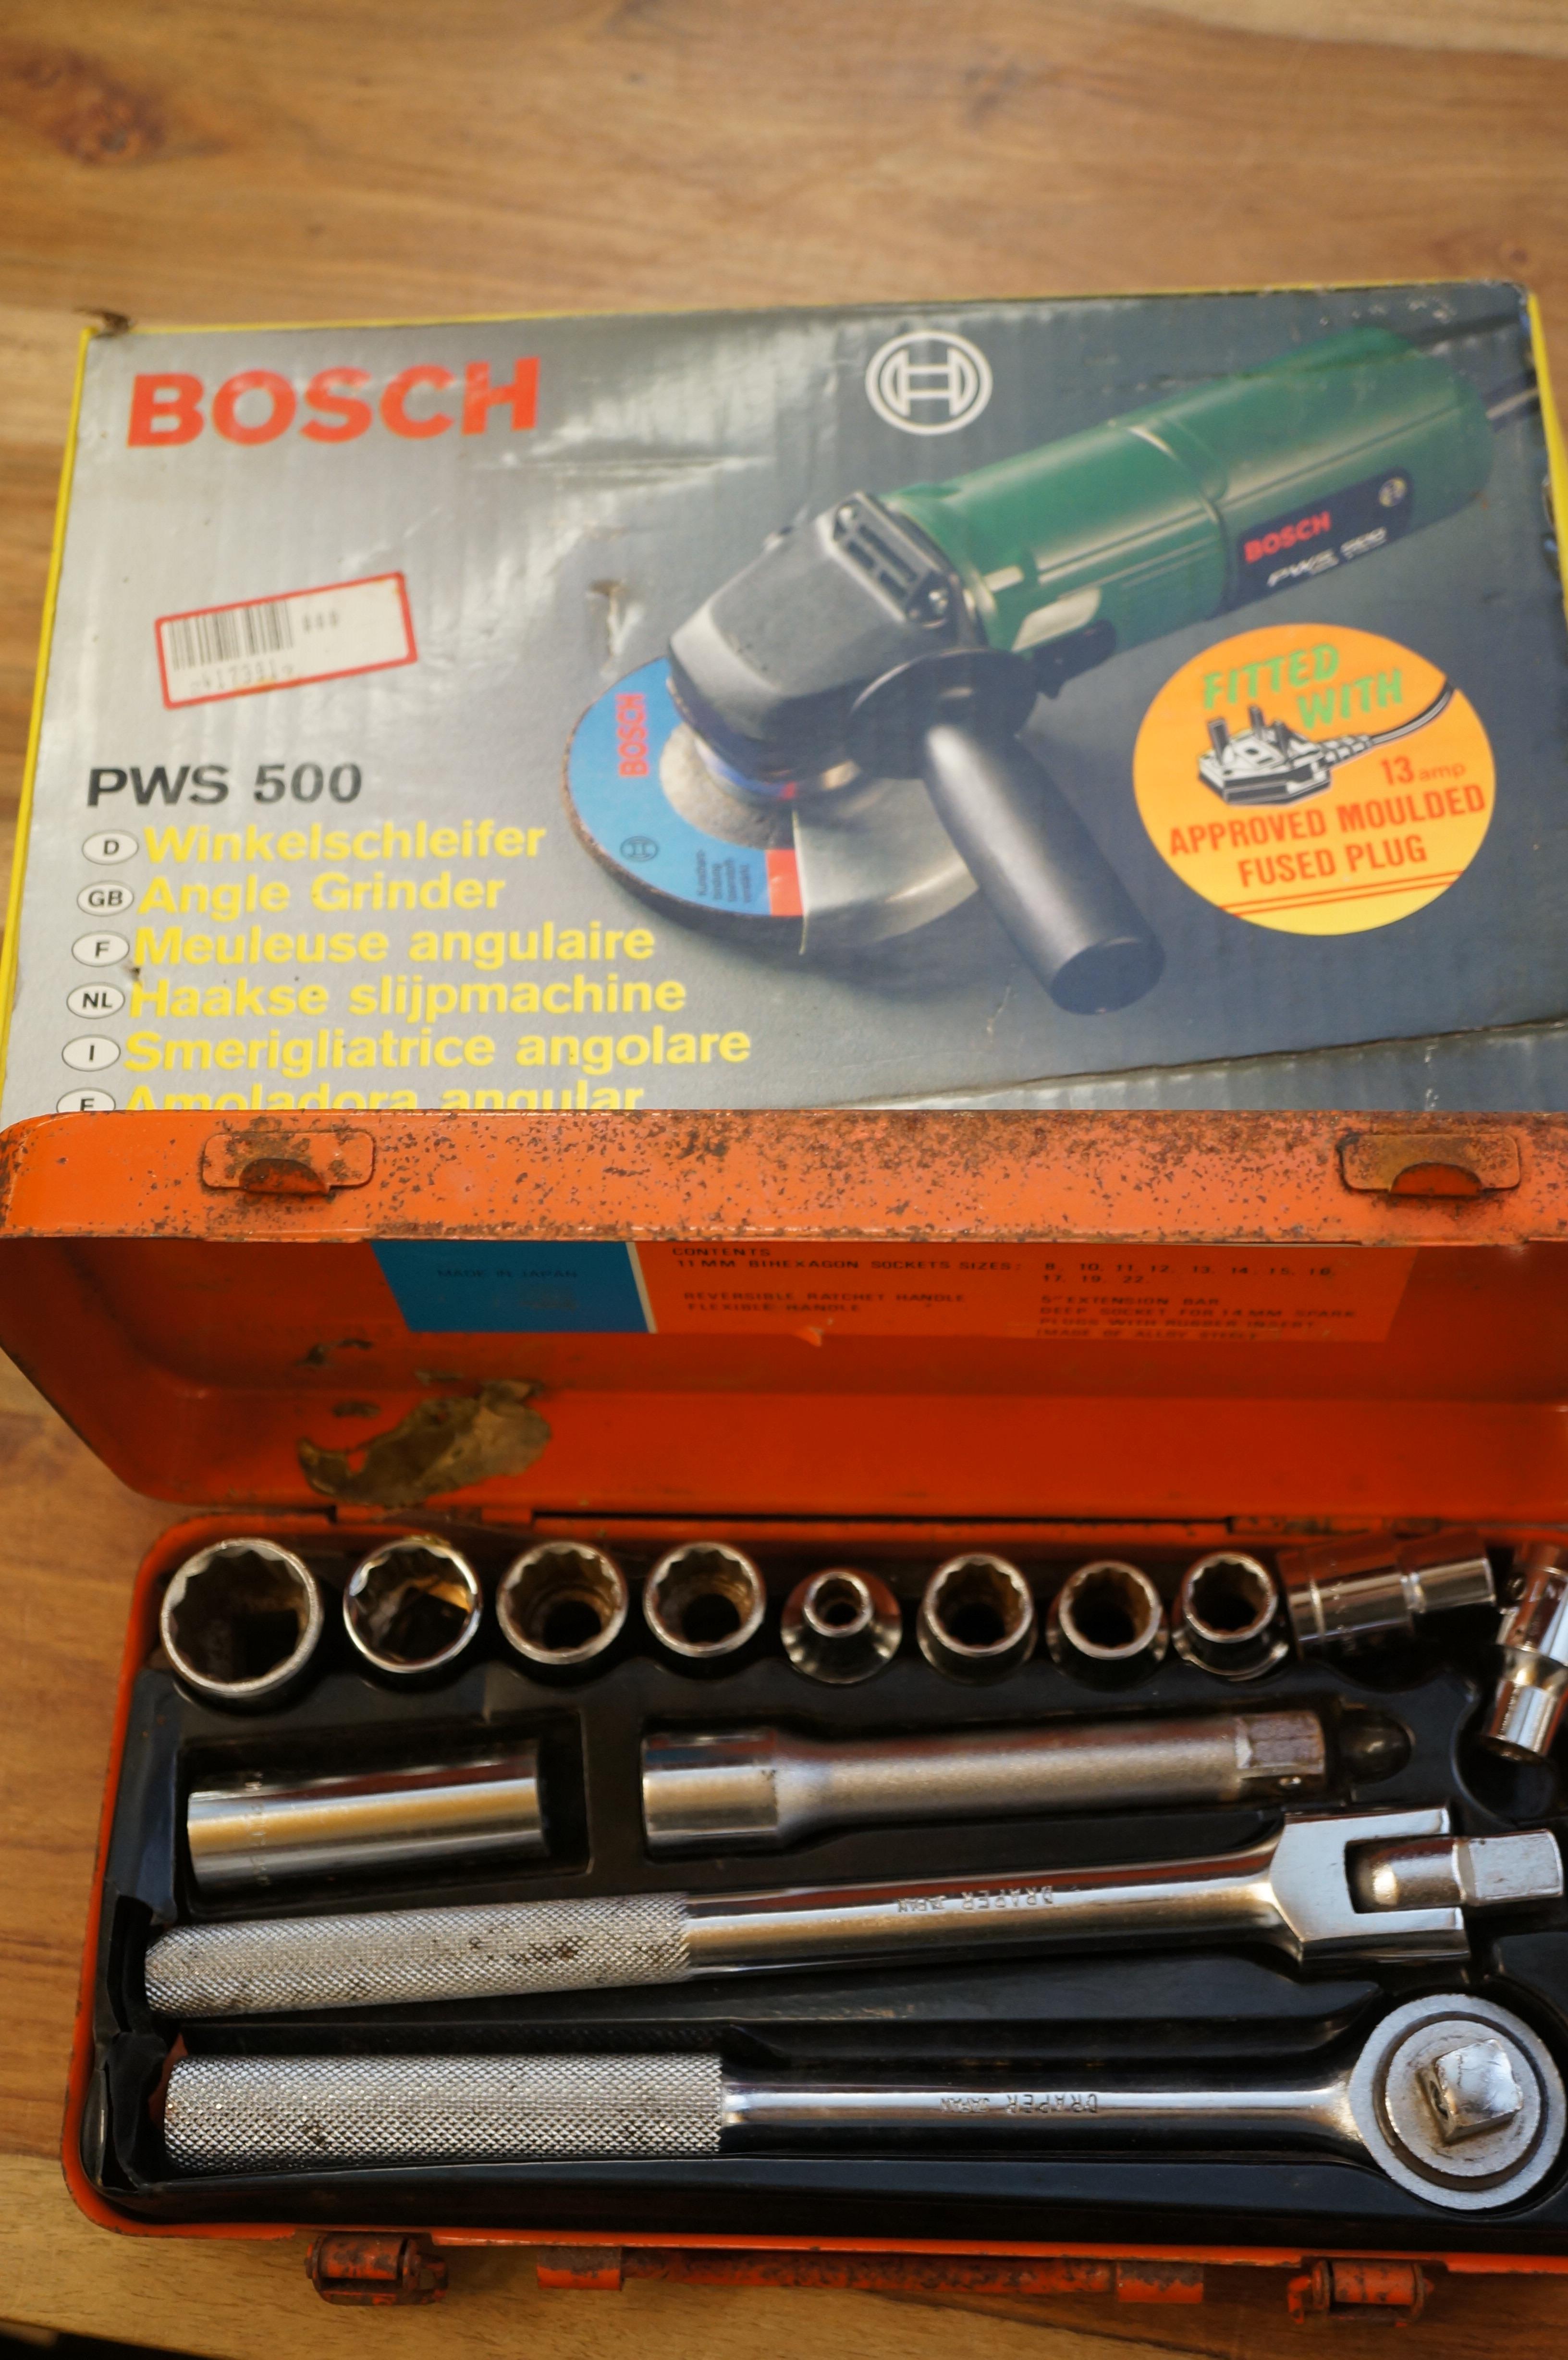 Bosch angle grinder, Draper socket set